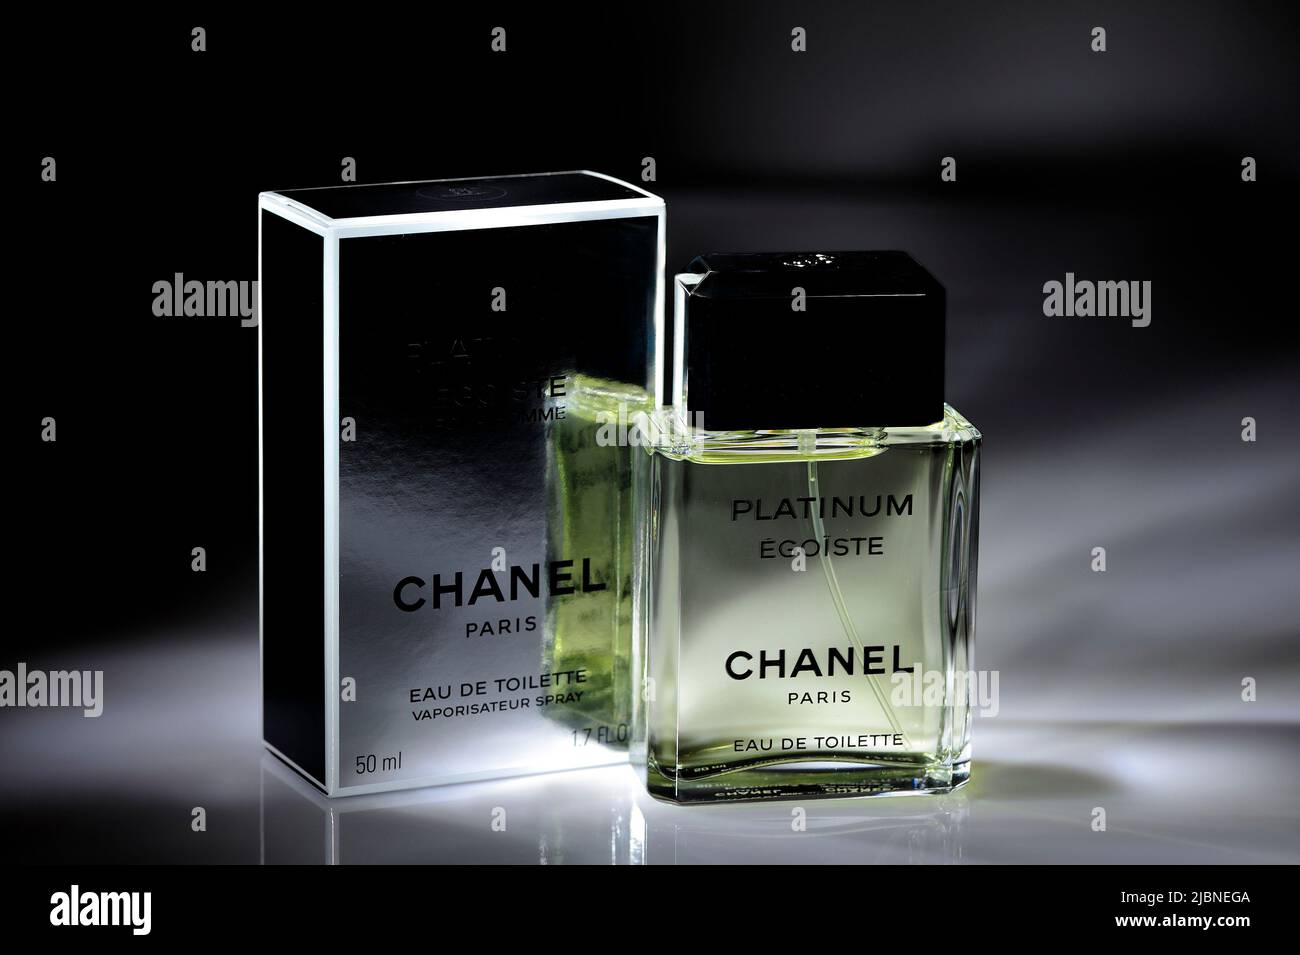 Chanel Platinum Egoiste Eau De Toilette 50ml For Men